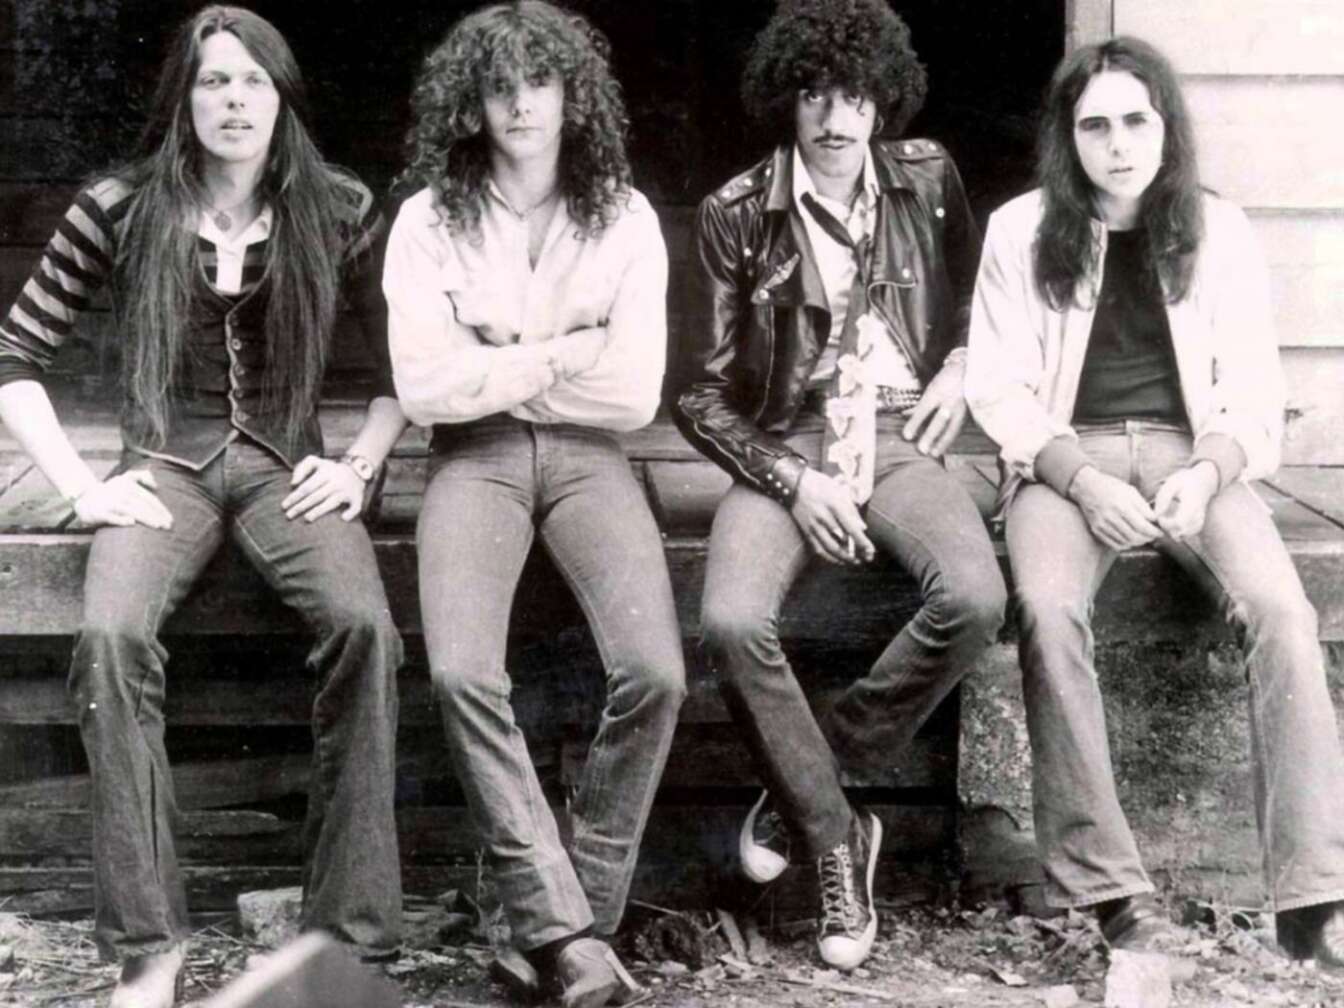 Thin Lizzy Gruppenfoto in Schwarz-Weiß